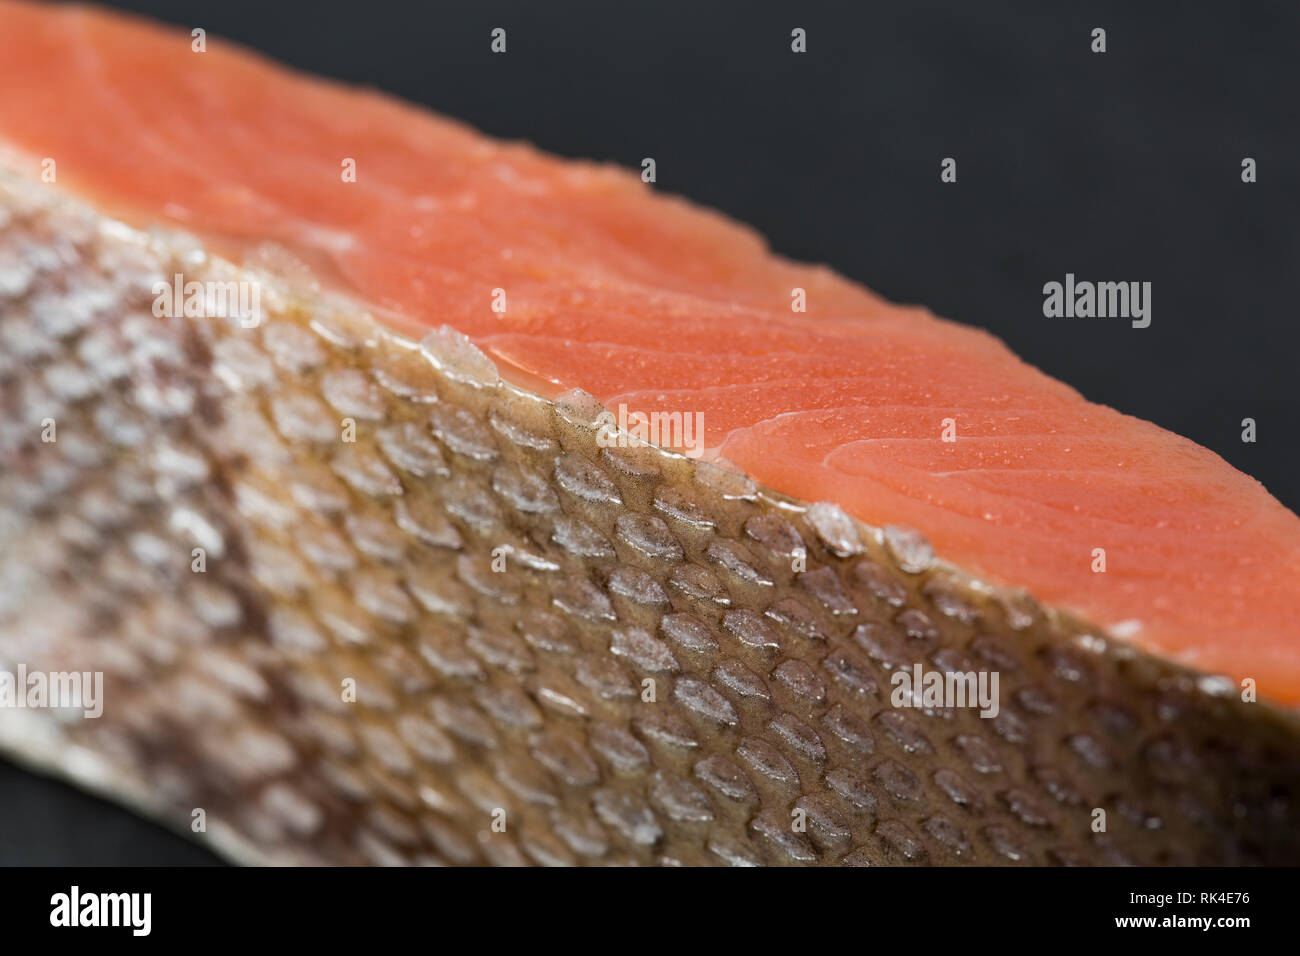 Eine einzelne, roh Keta Lachs filet, Oncorhynchus keta, gekauft von einem britischen Supermarkt und im nordöstlichen Pazifik gefangen, die Maßstab ein Stockfoto